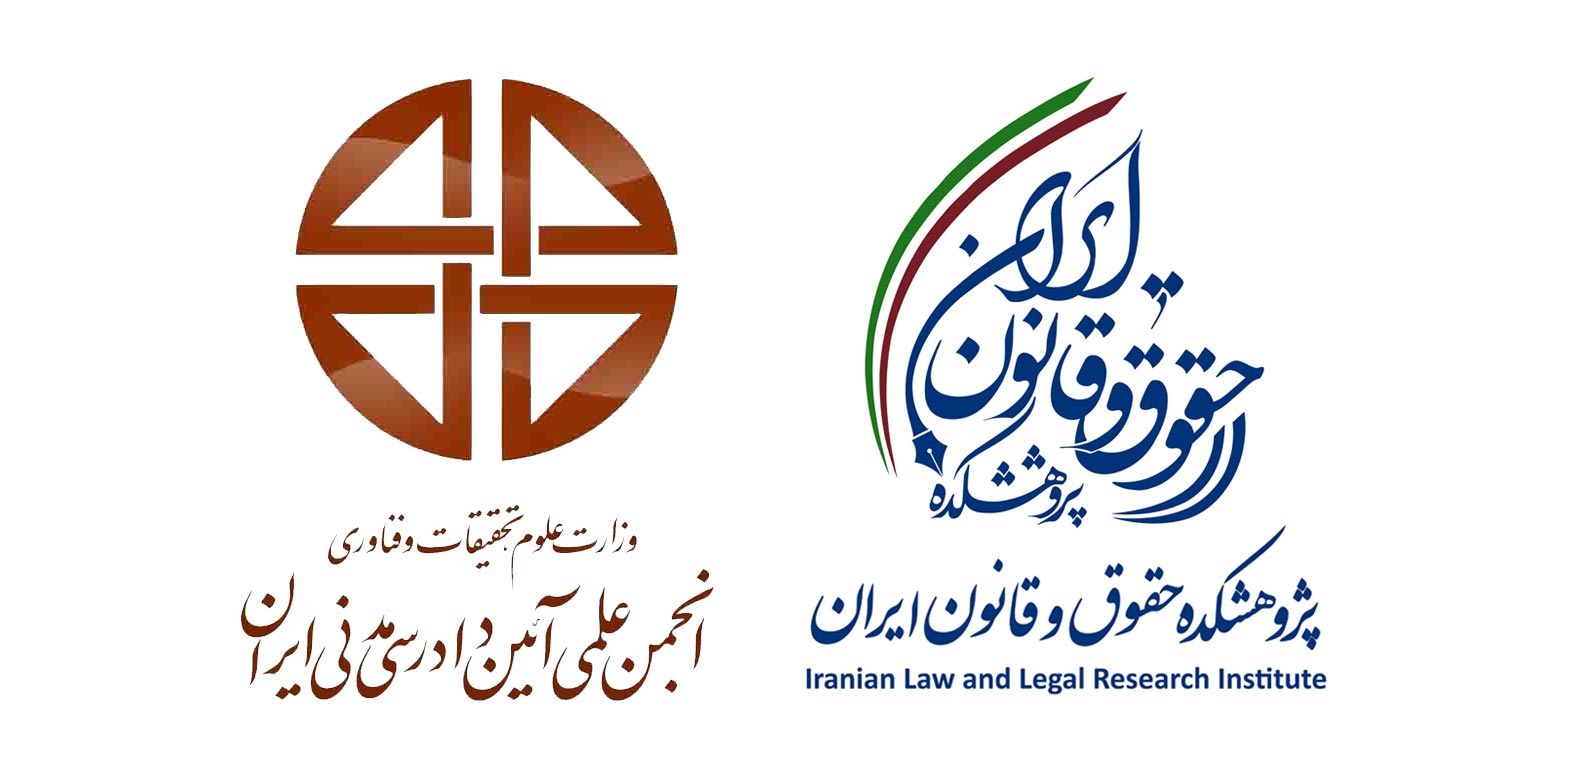 پژوهشکده حقوق و قانون ایران و انجمن علمی آیین دادرسی مدنی ایران تفاهم نامه همکاری امضا کردند.